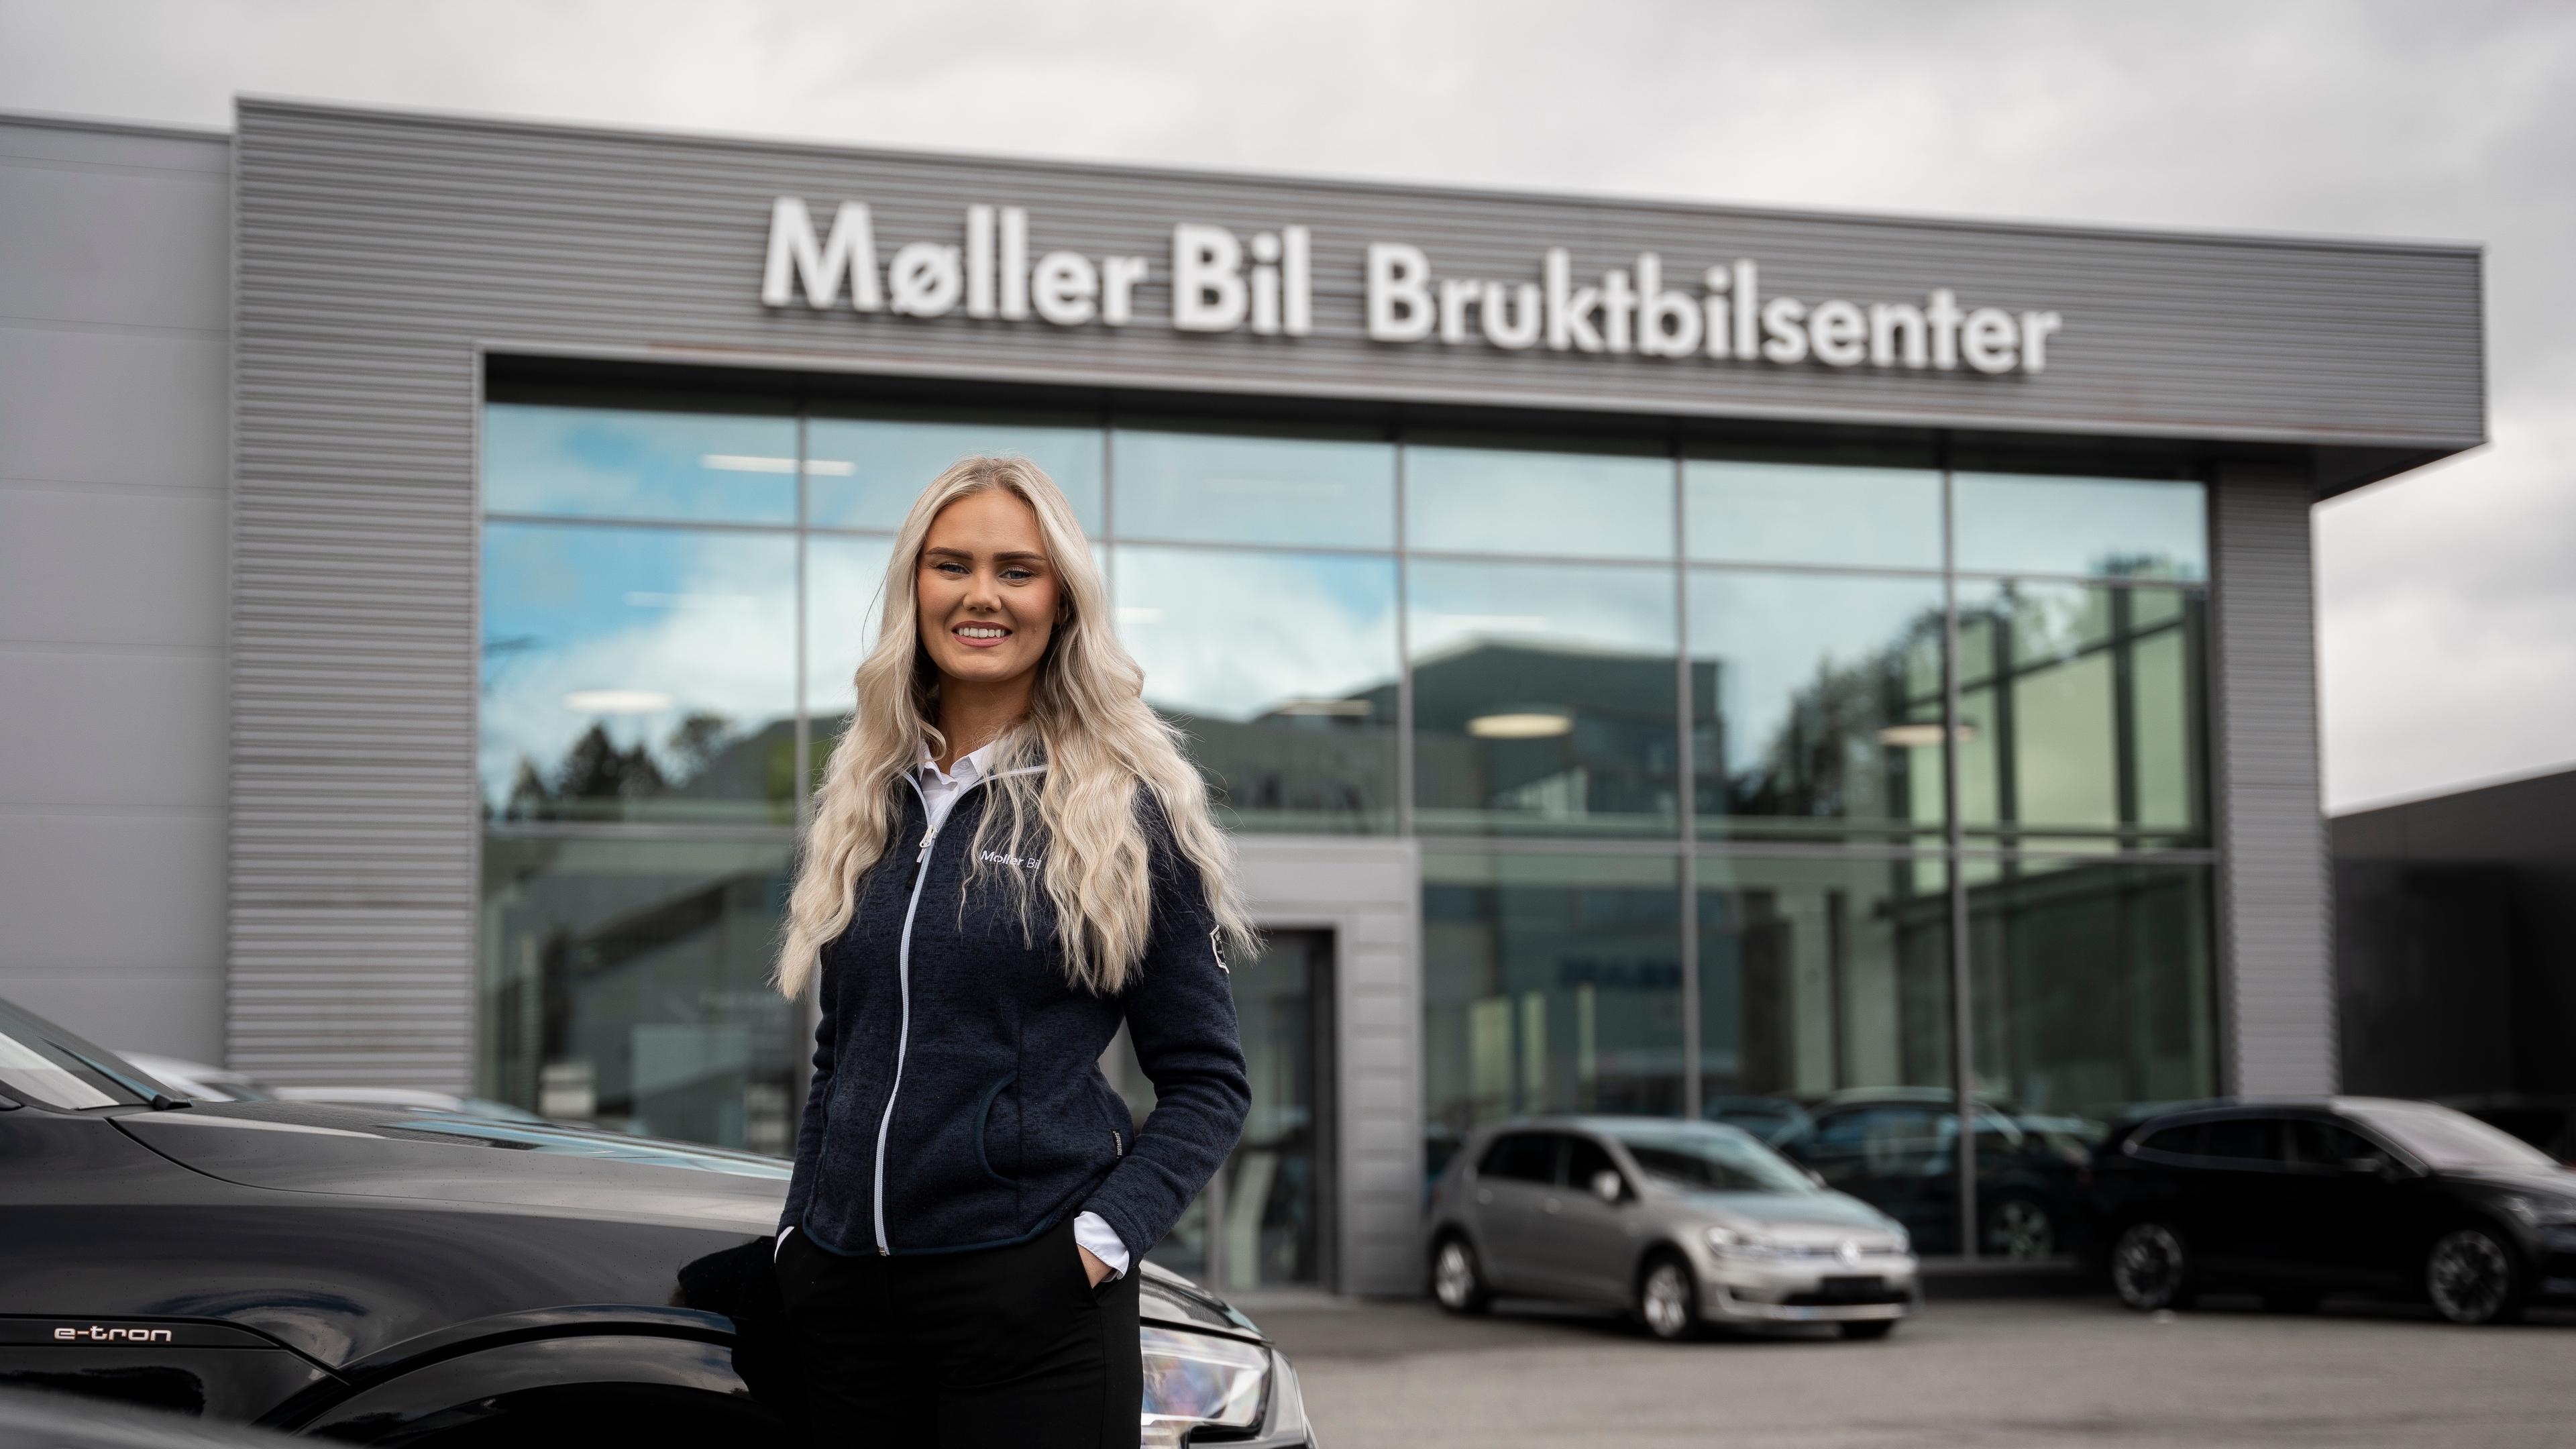 Velkommen til en av Møller Bils bruktavdelinger eller bruktbilsentre.